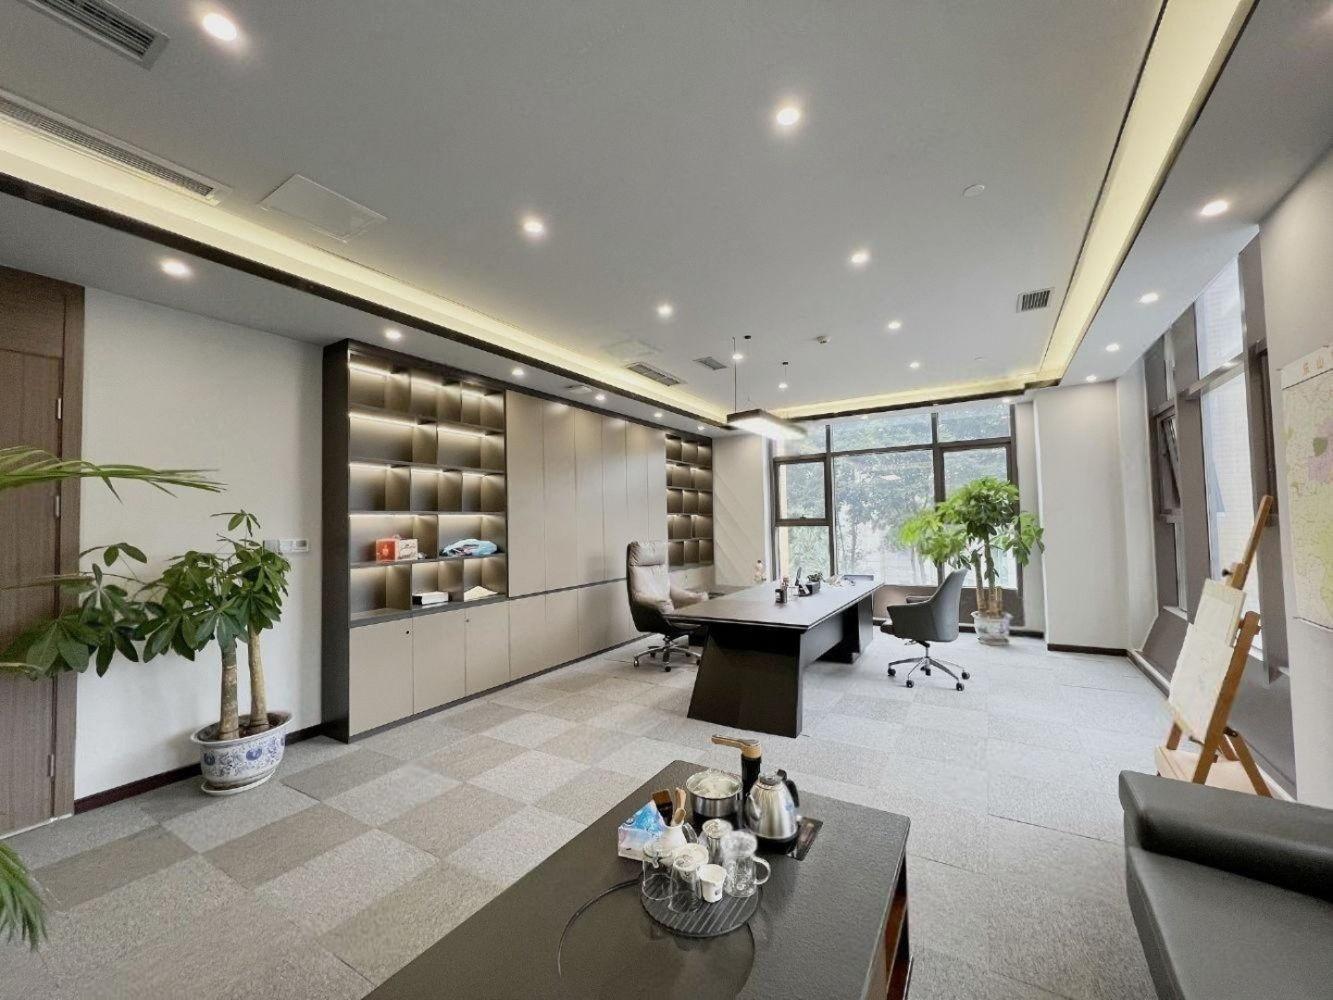 南山华侨城创意园新出办公室500平精装带家私户型方正